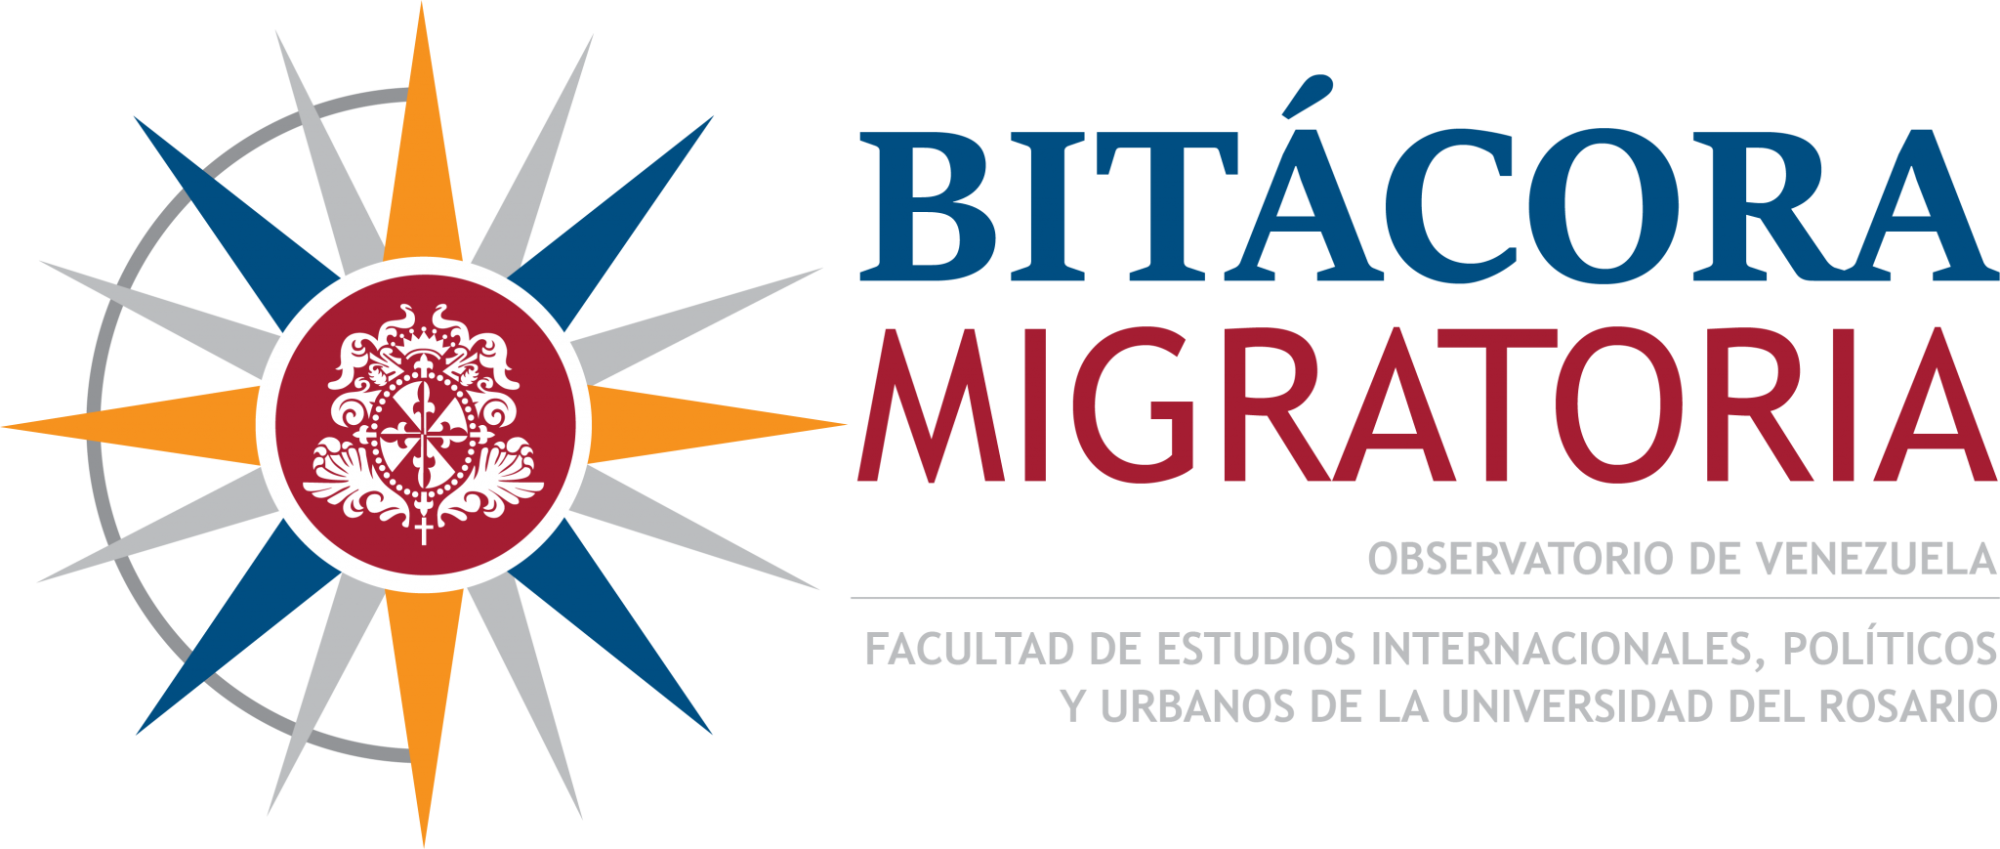 logo_bitacora